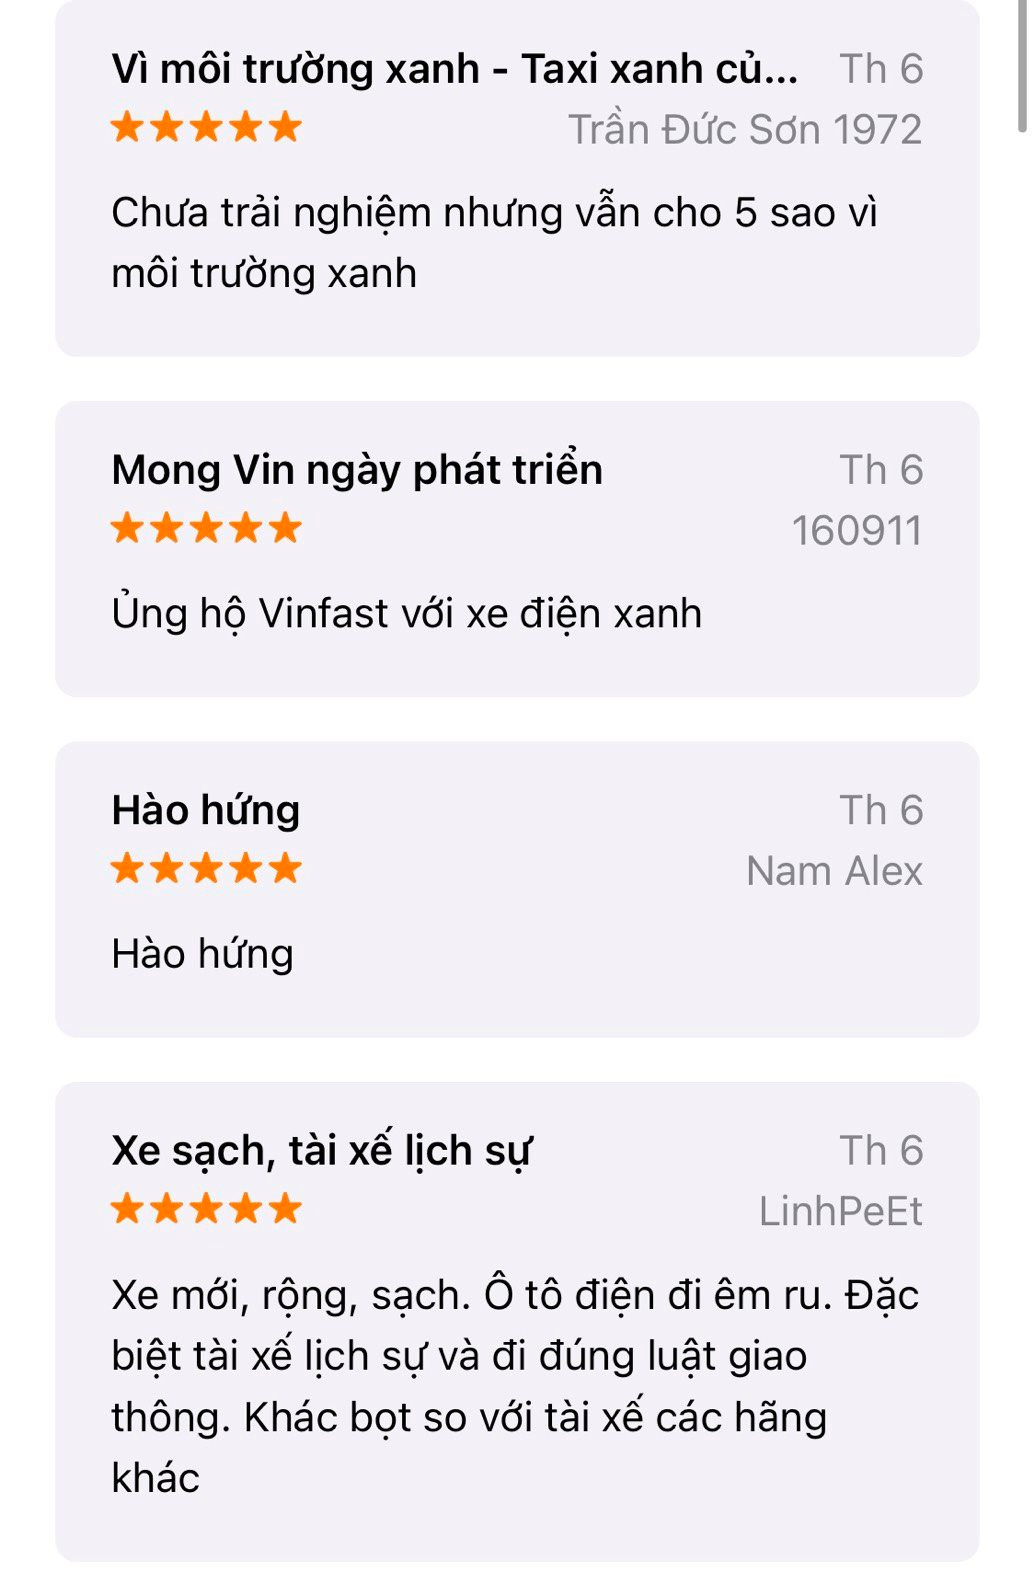 Người dùng đang đánh giá Taxi Xanh SM trên App Store ra sao: Có 1 tính năng khách hàng muốn bổ sung gấp! - Ảnh 3.